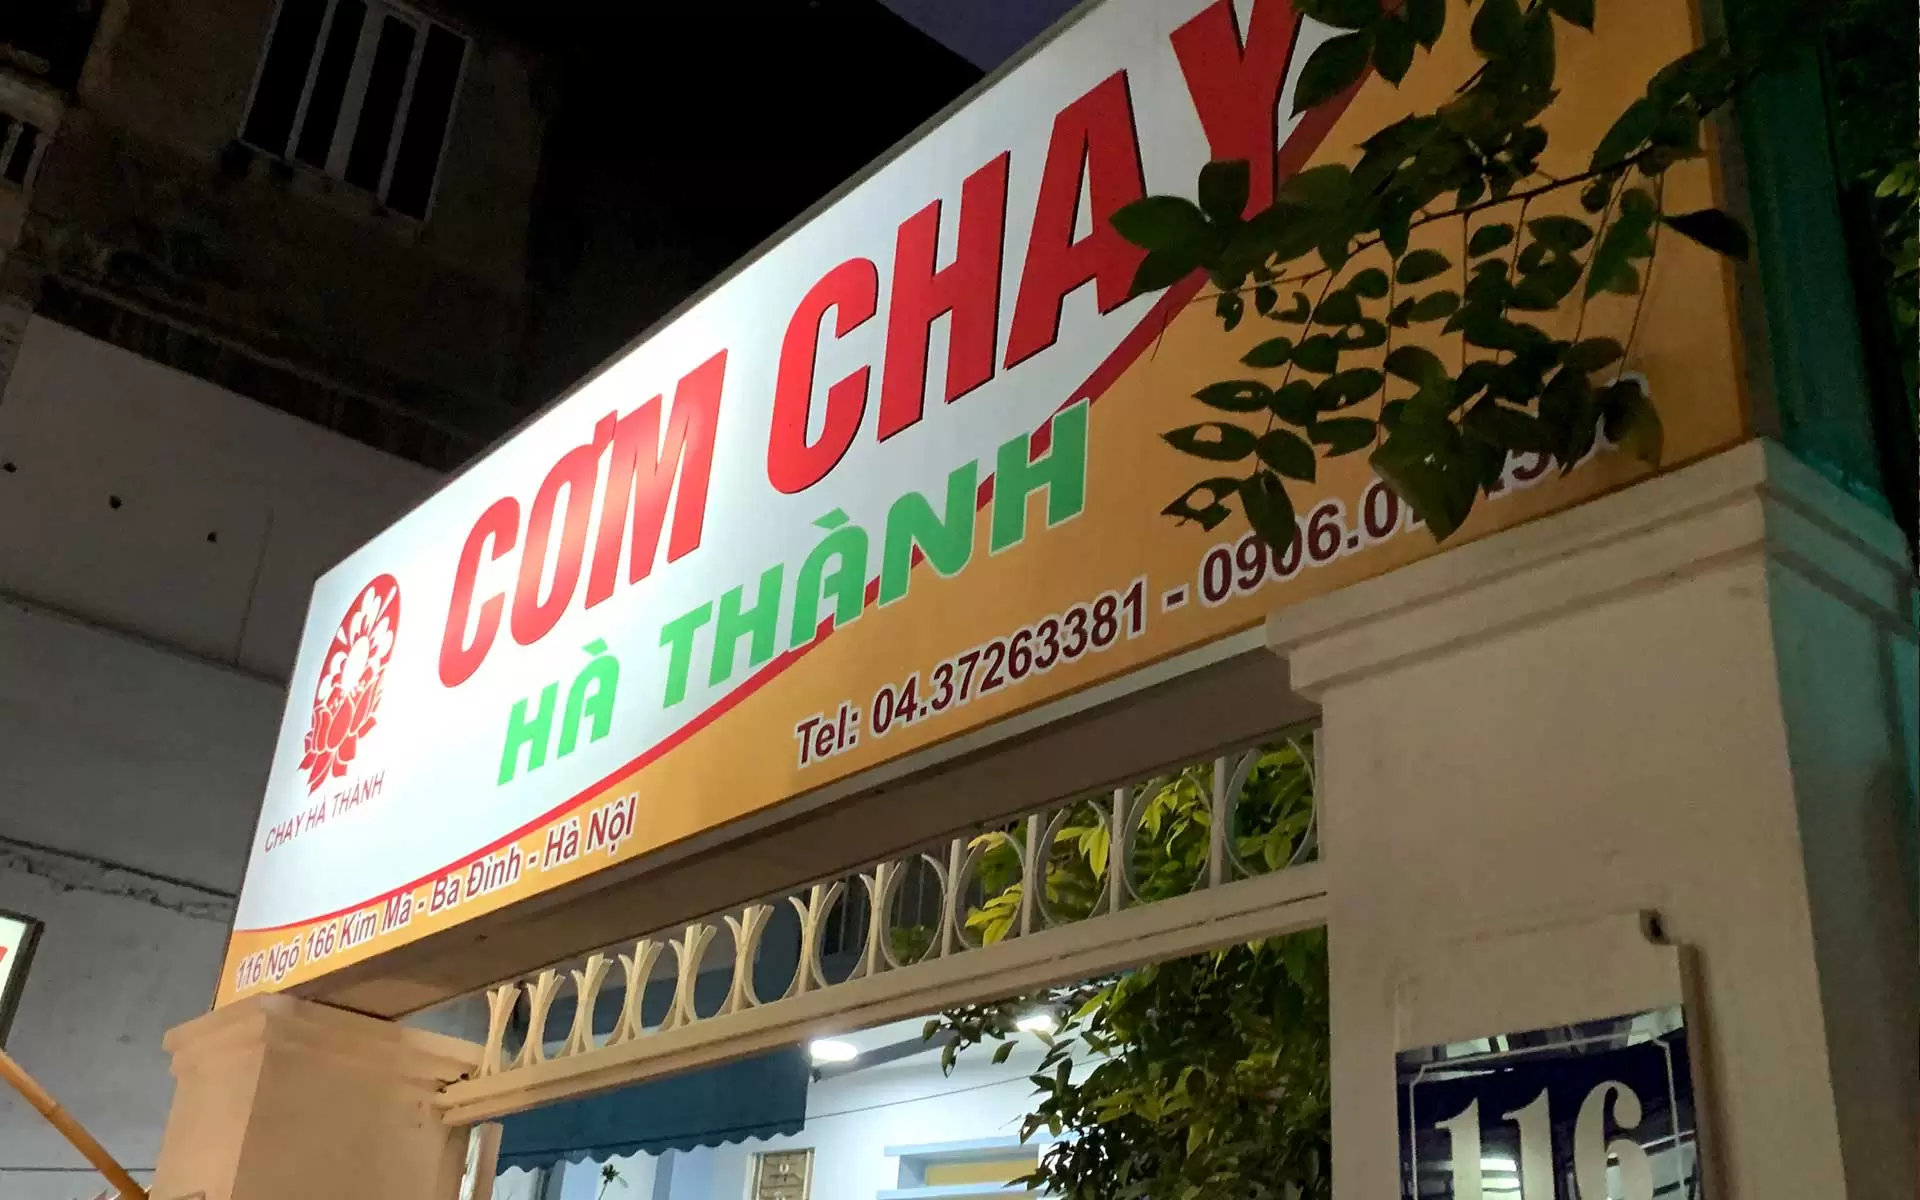 Enjoy wide range of food for different vegetarian meals at Ha Thanh restaurant